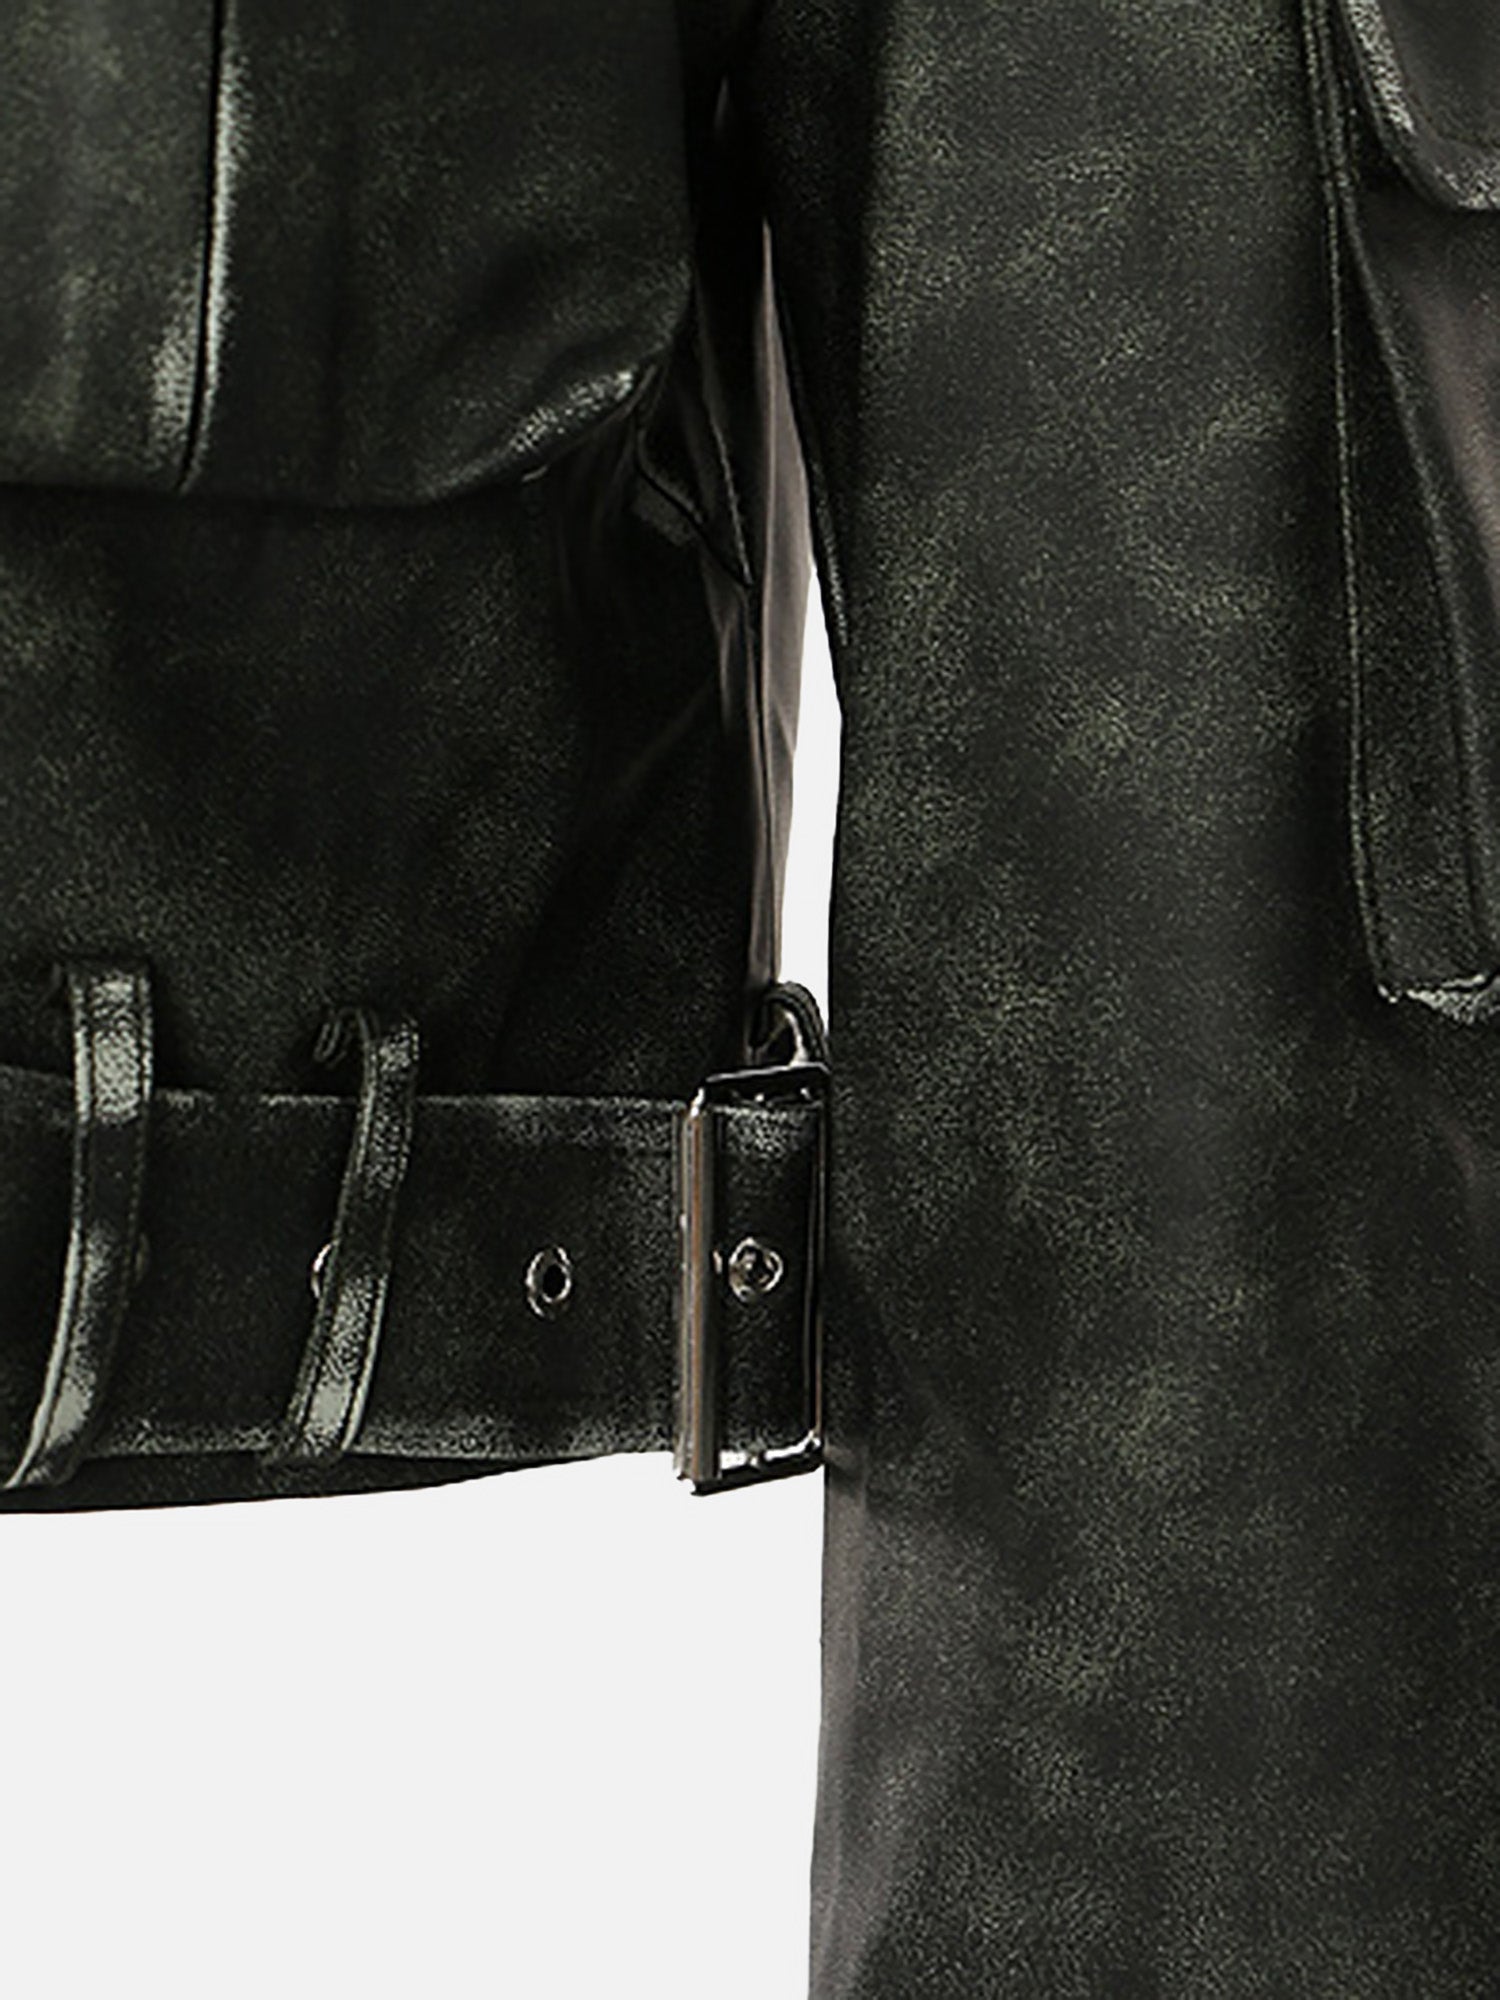 Thesupermade Personalized Irregular Cut Polished Leather Jacket - 2008